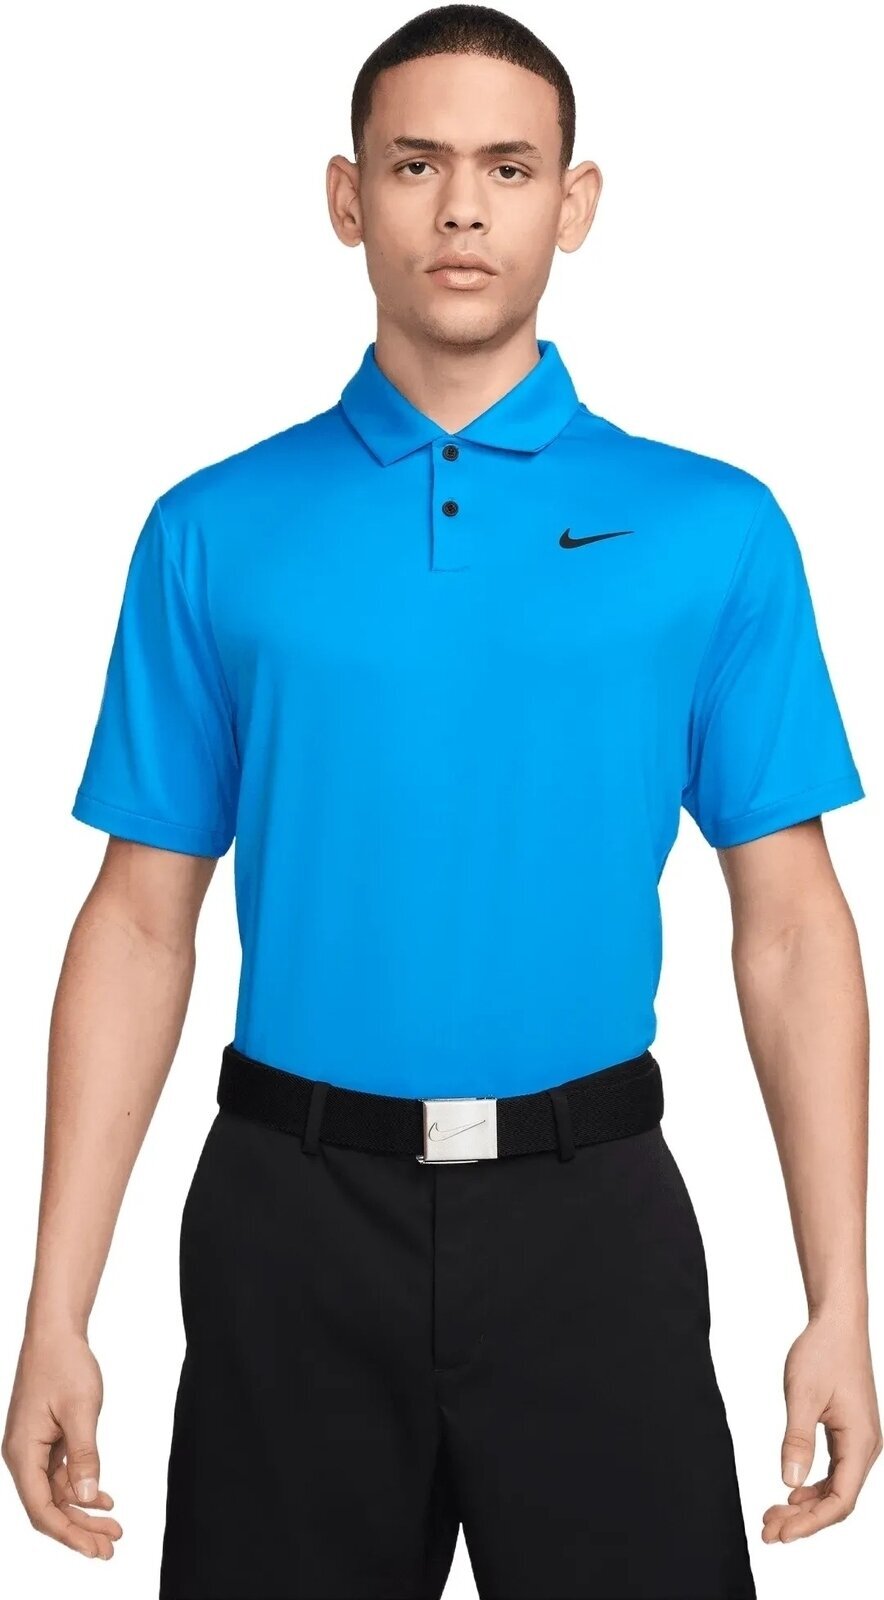 Camisa pólo Nike Dri-Fit Tour Solid Mens Polo Light Photo Blue/Black L